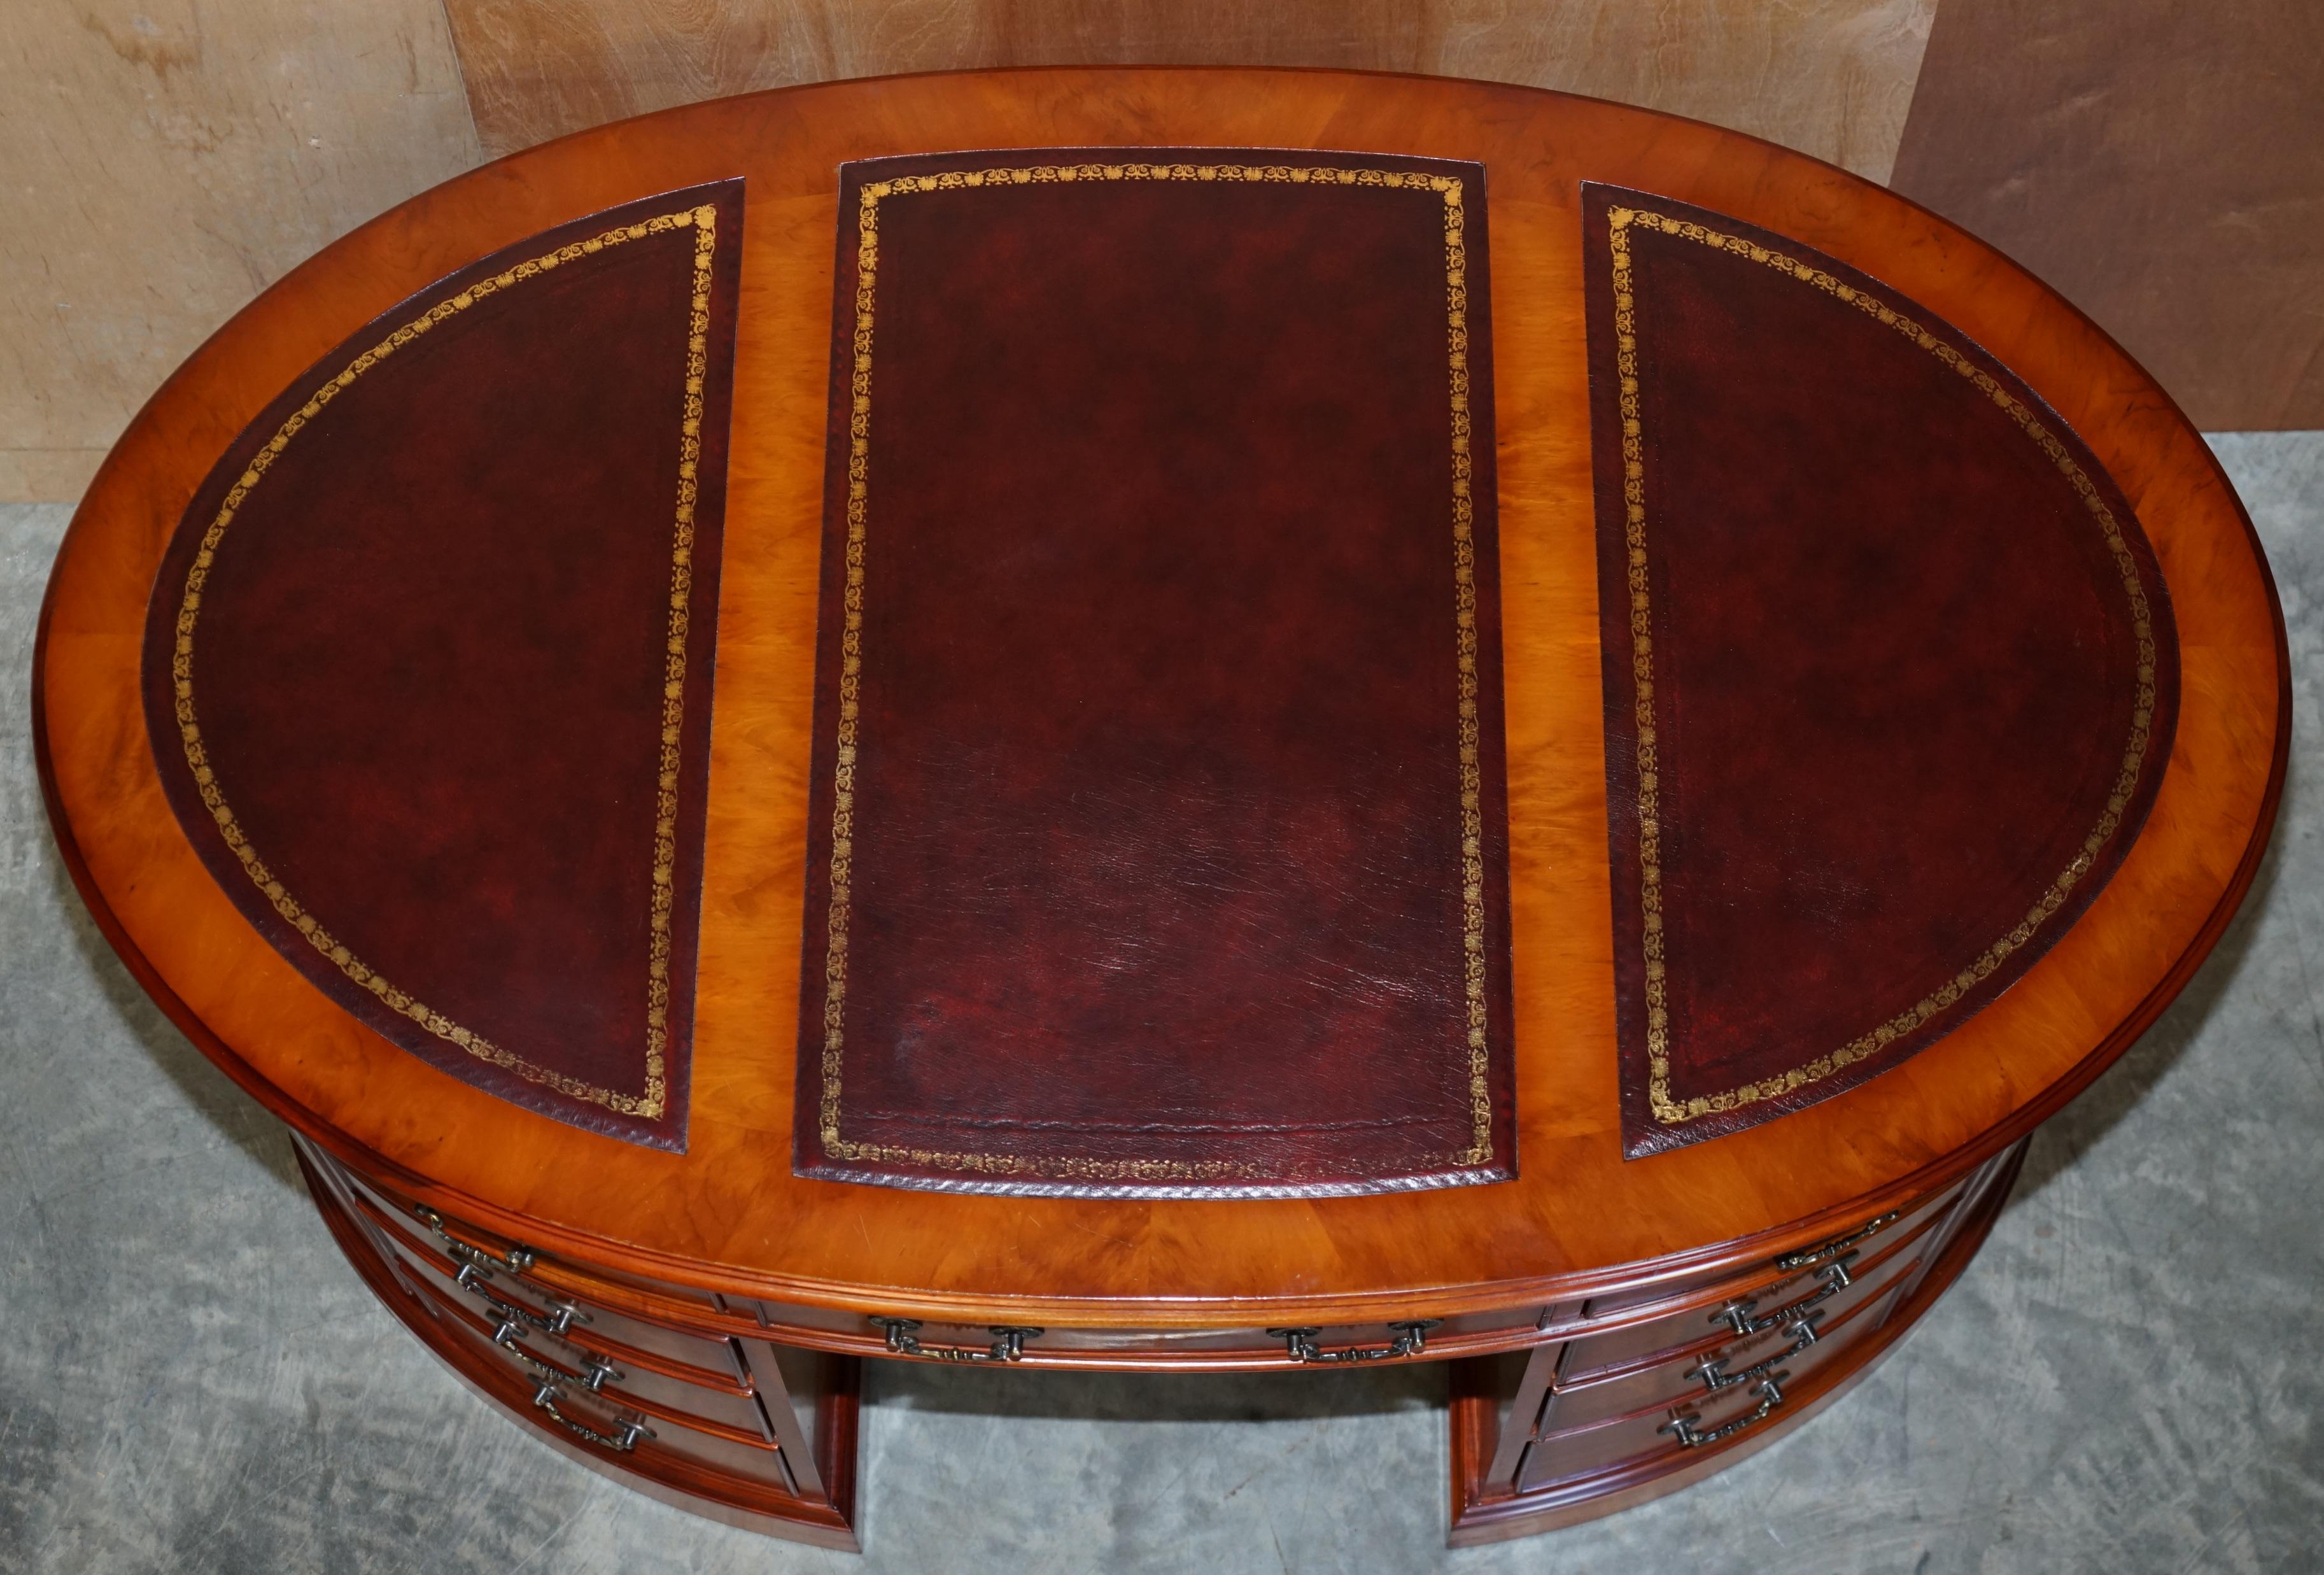 Regency Burr Yew Wood Oval Pedestal Partners Desk Oxblood Leather Top Butlers Trays